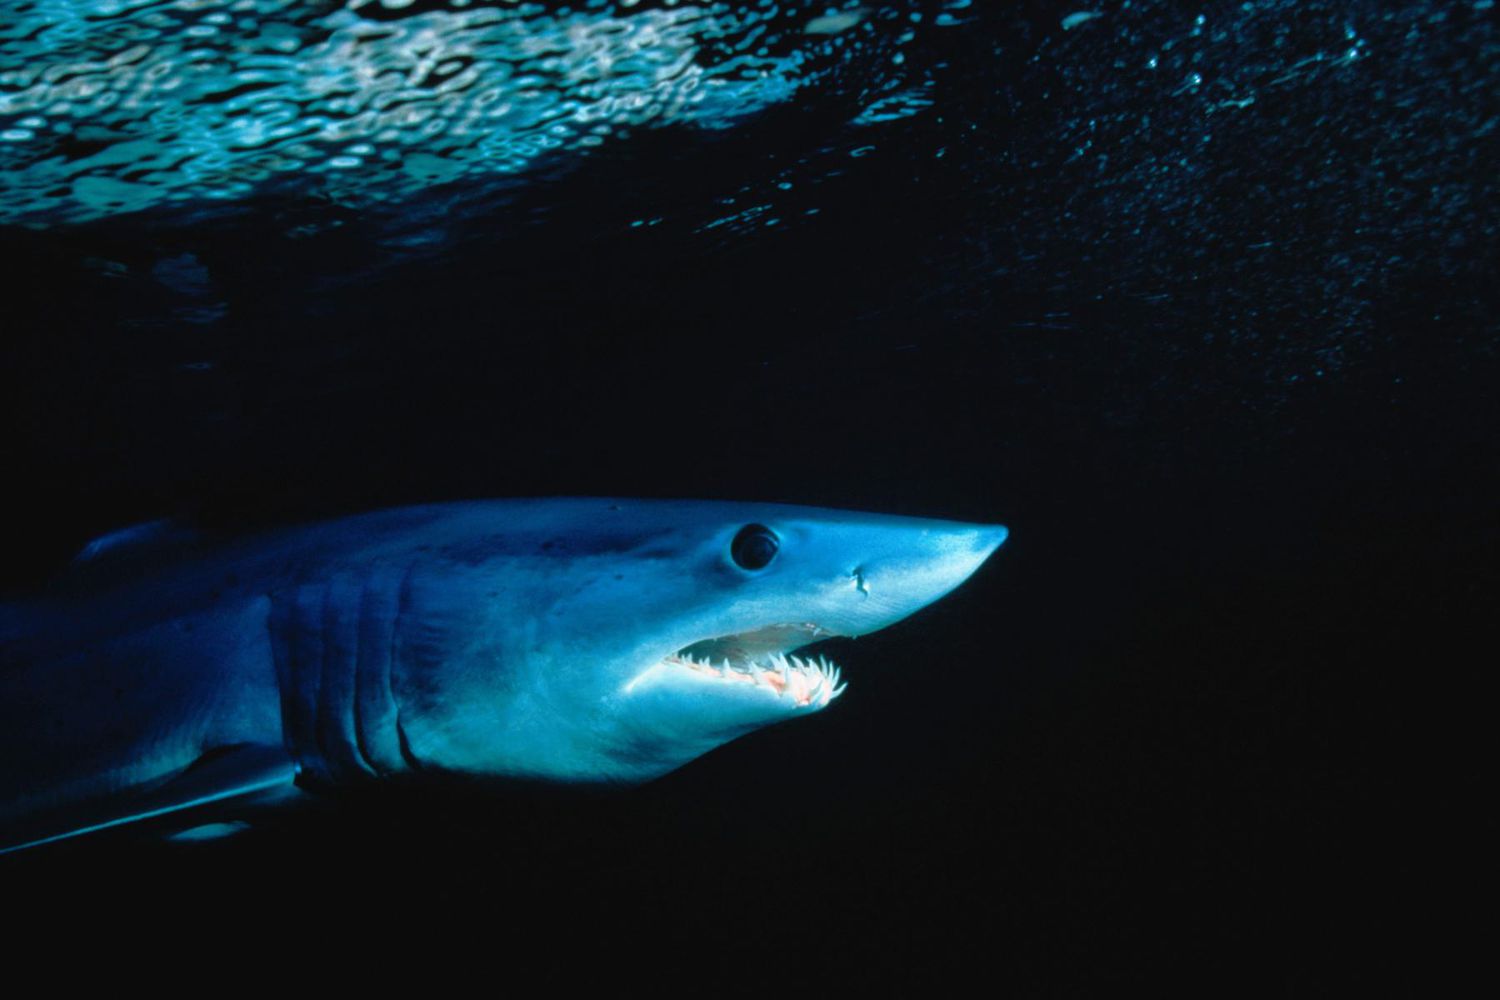 A shortfin Mako shark